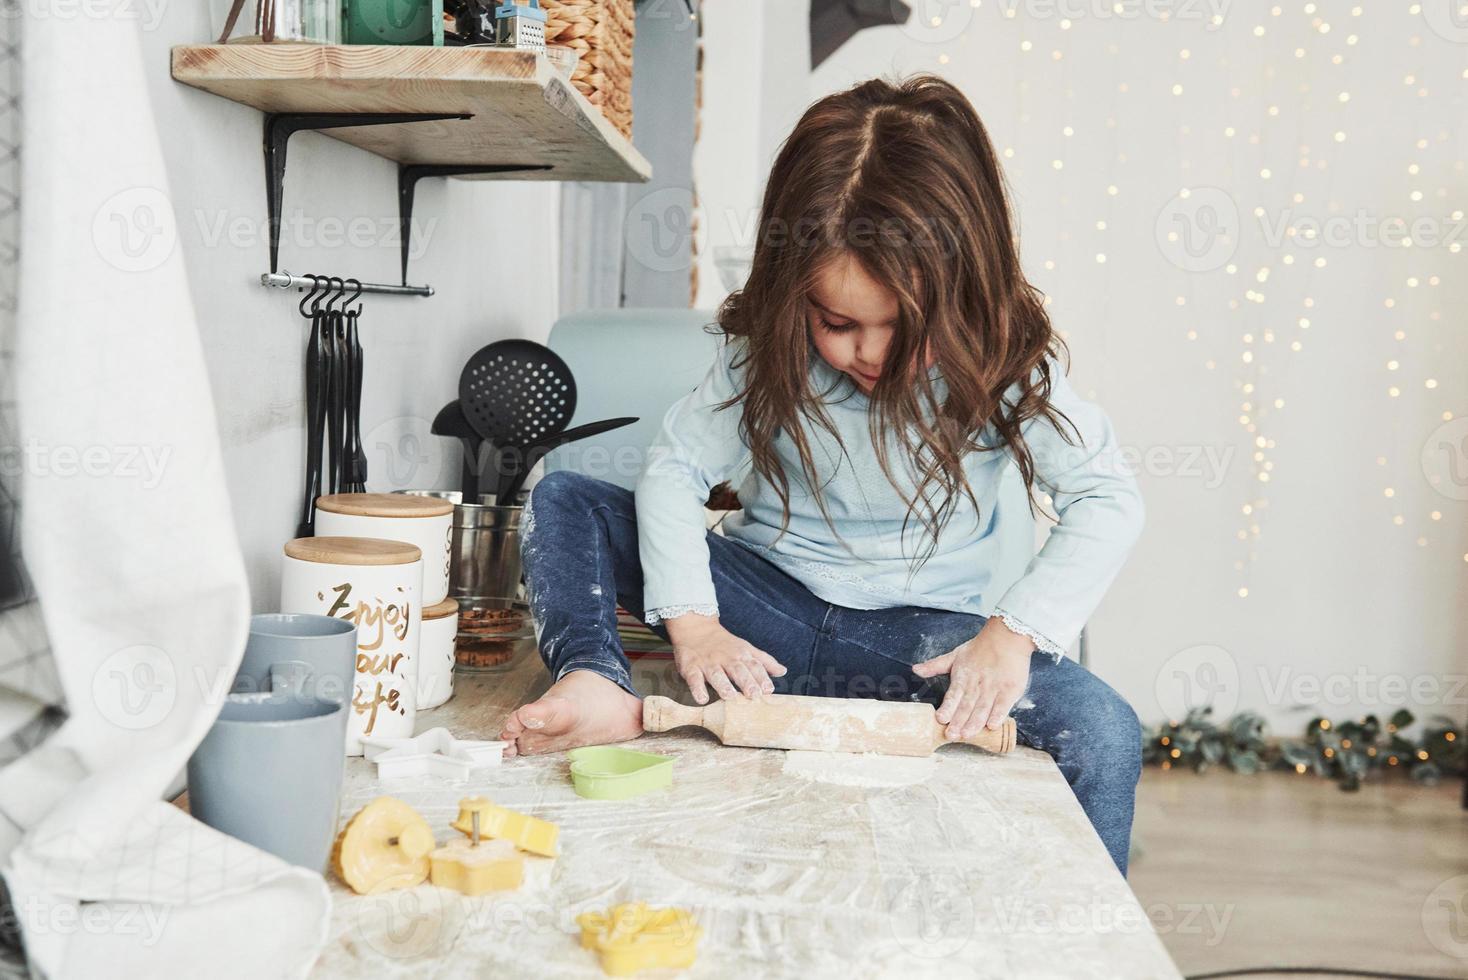 guirlandas e decorações do feriado no fundo. foto de uma linda garotinha sentada na mesa da cozinha brincando com farinha